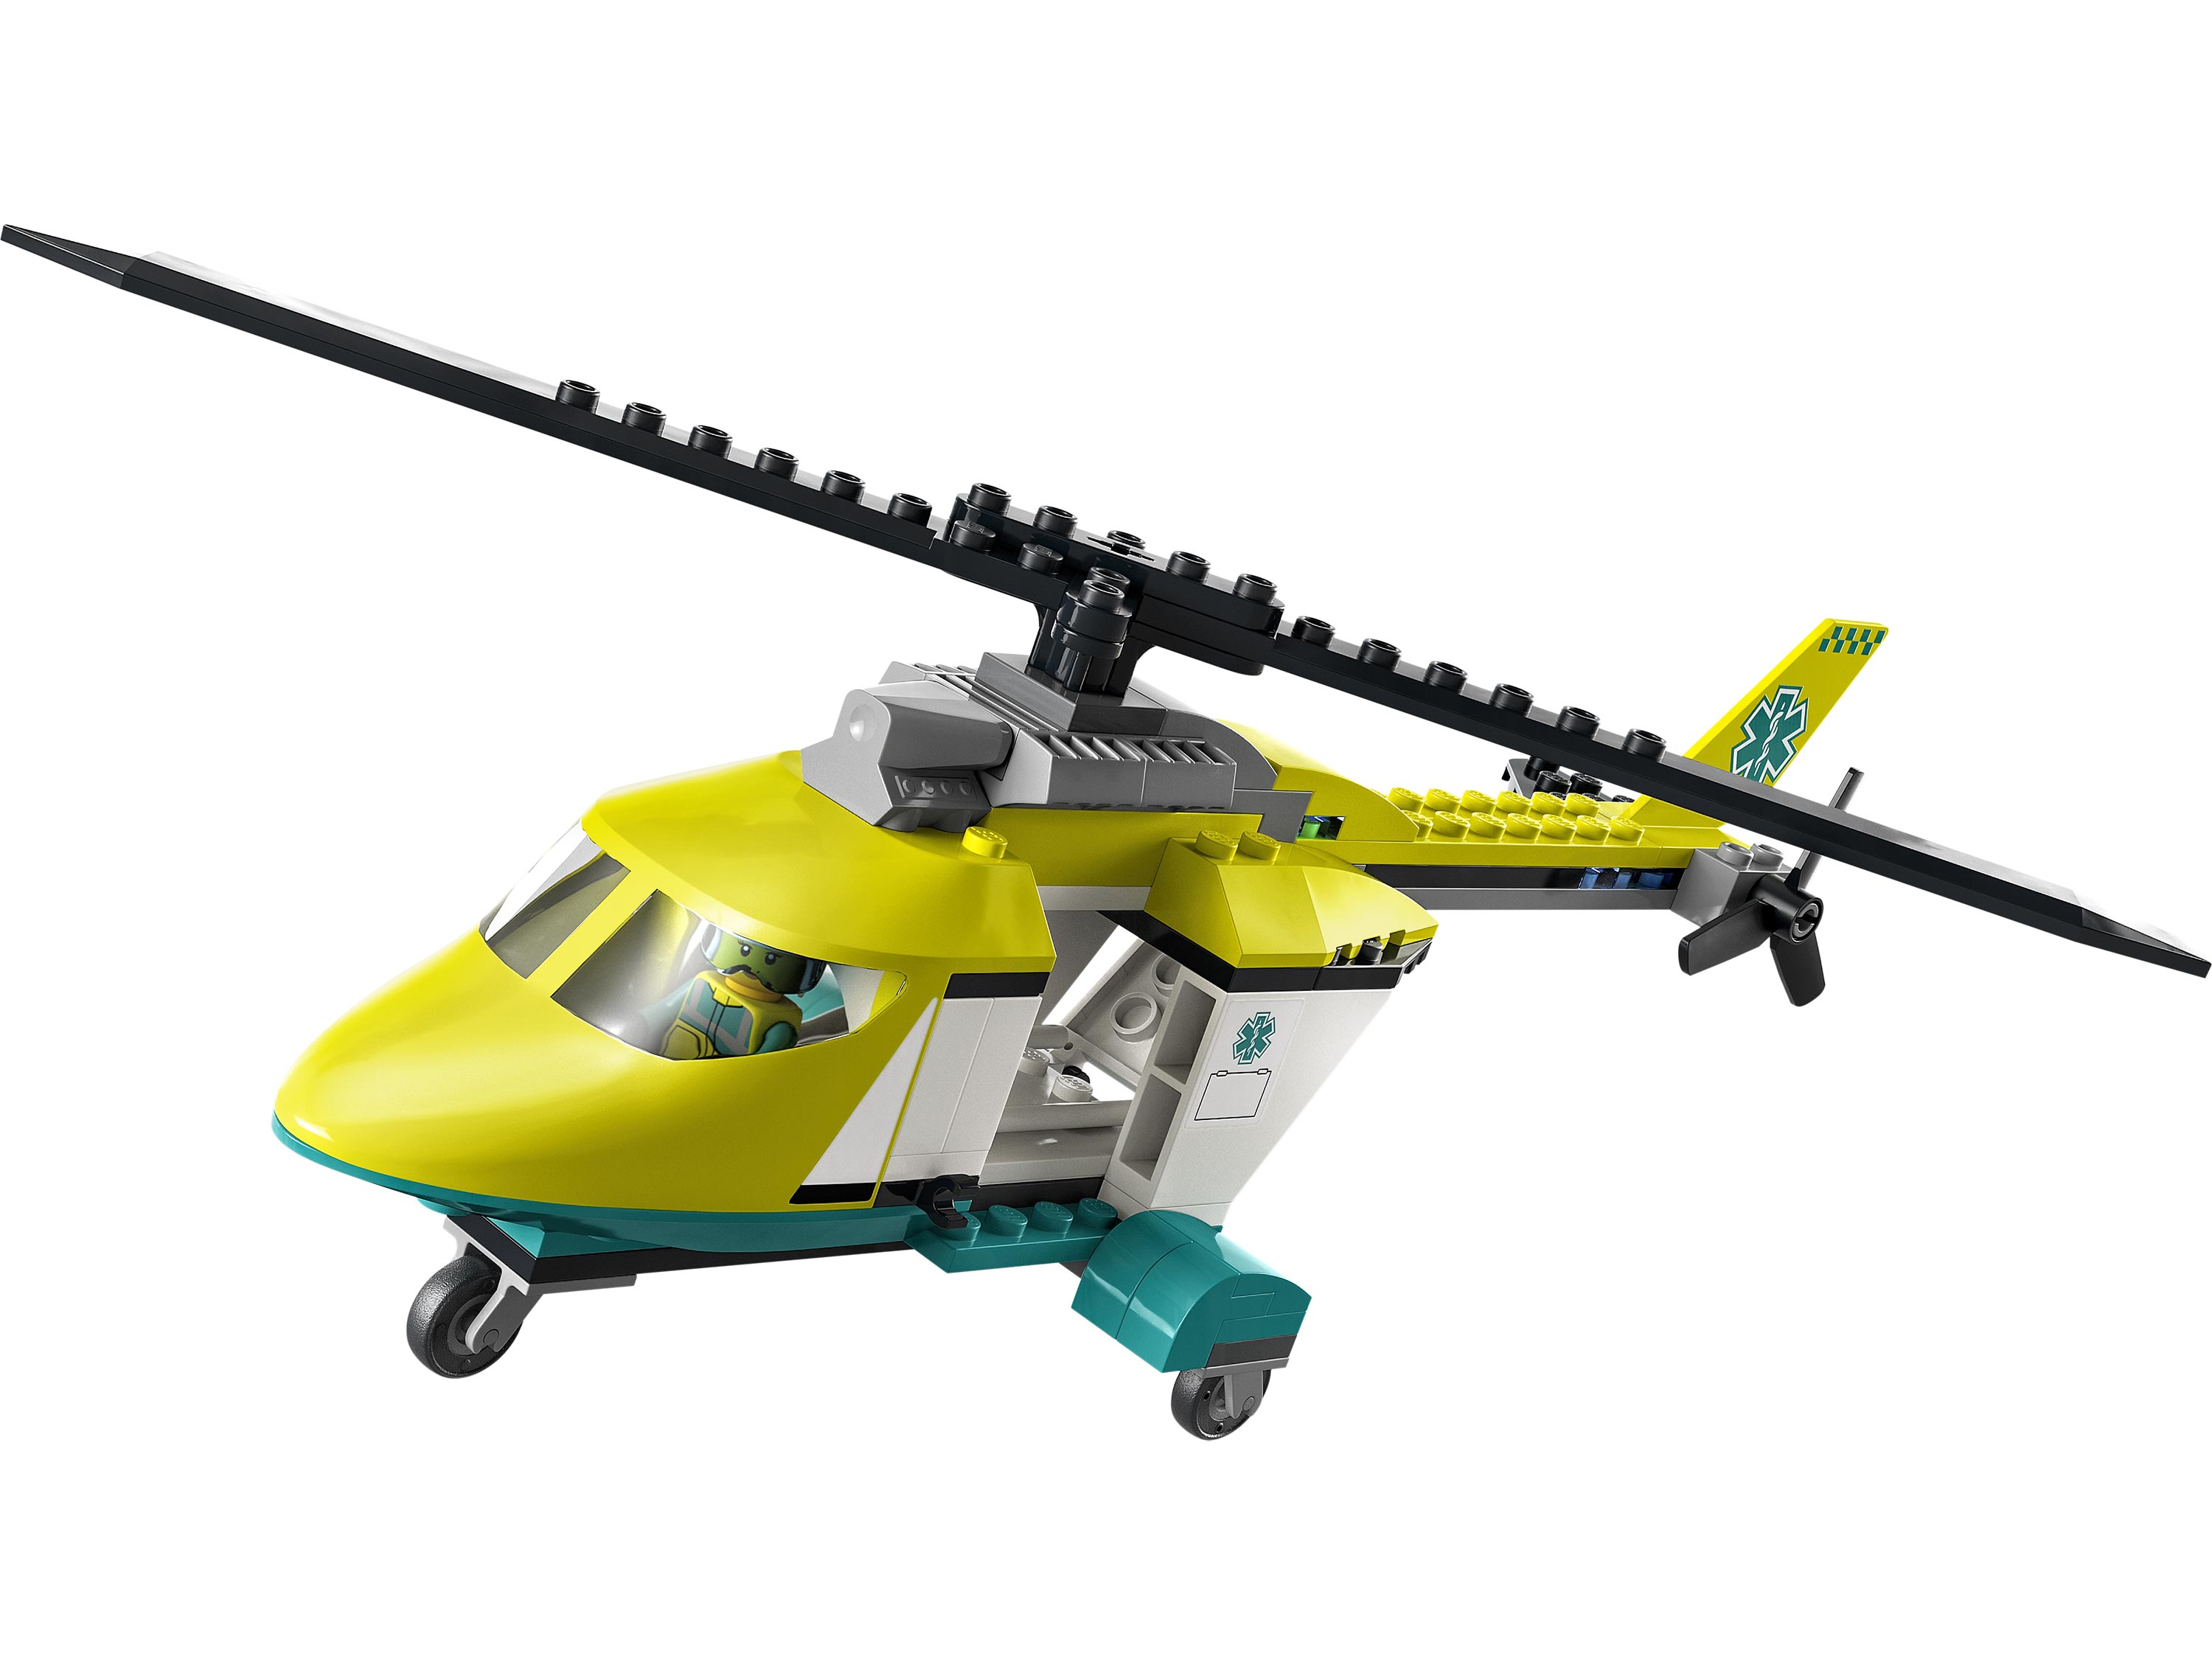 Конструктор LEGO City Great Vehicles 60343 Грузовик для спасательного вертолёта